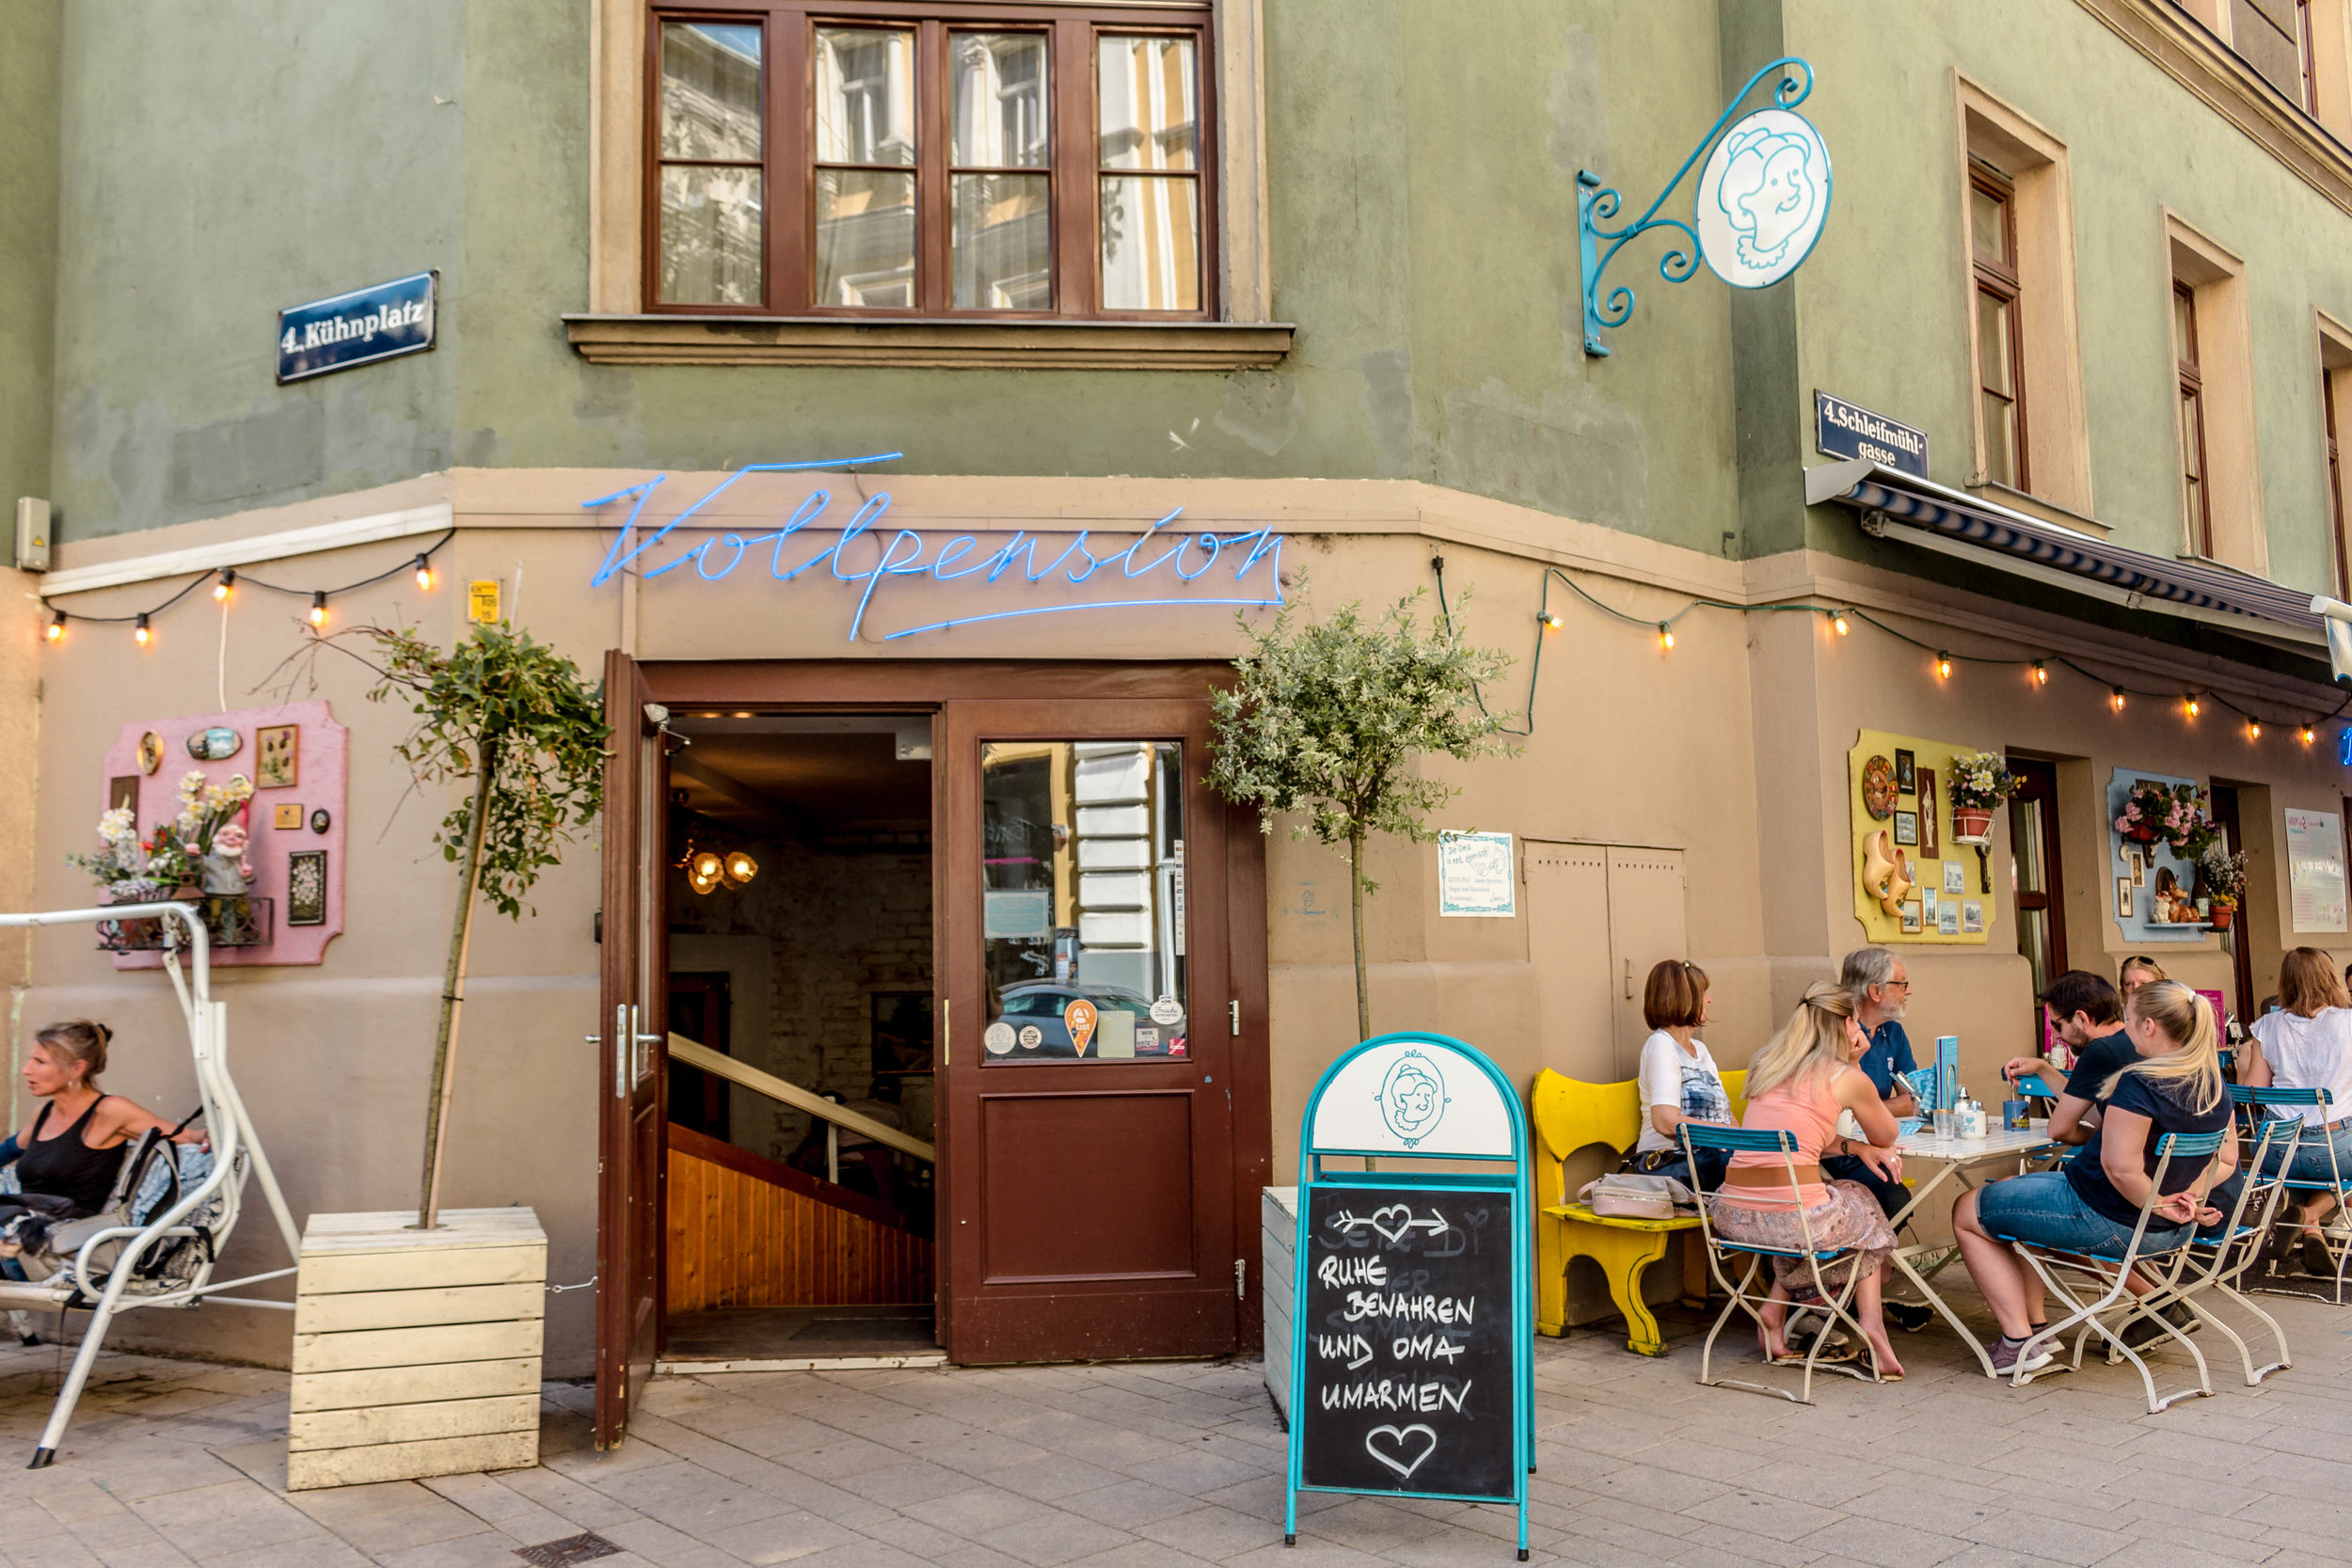 Vollpension cafe Vienna, Austria